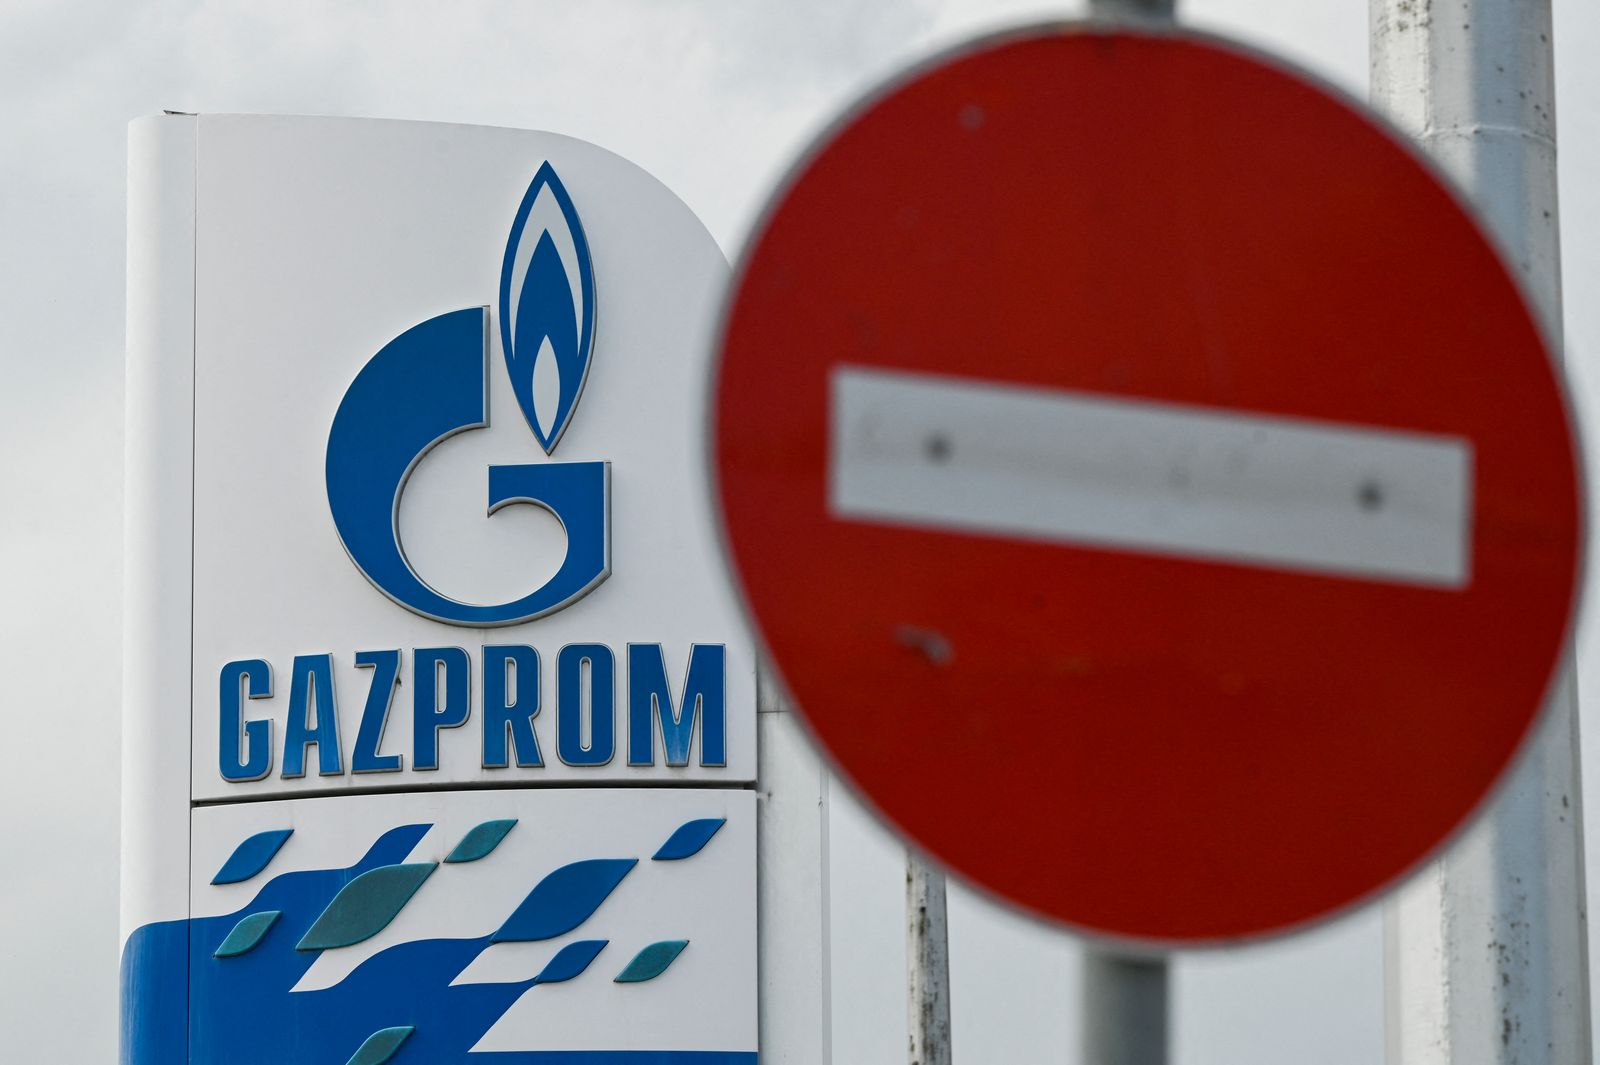 شعار شركة الطاقة الروسية العملاقة غازبروم في إحدى محطات الوقود في صوفيا، بلغاريا 27 أبريل 2022  - AFP